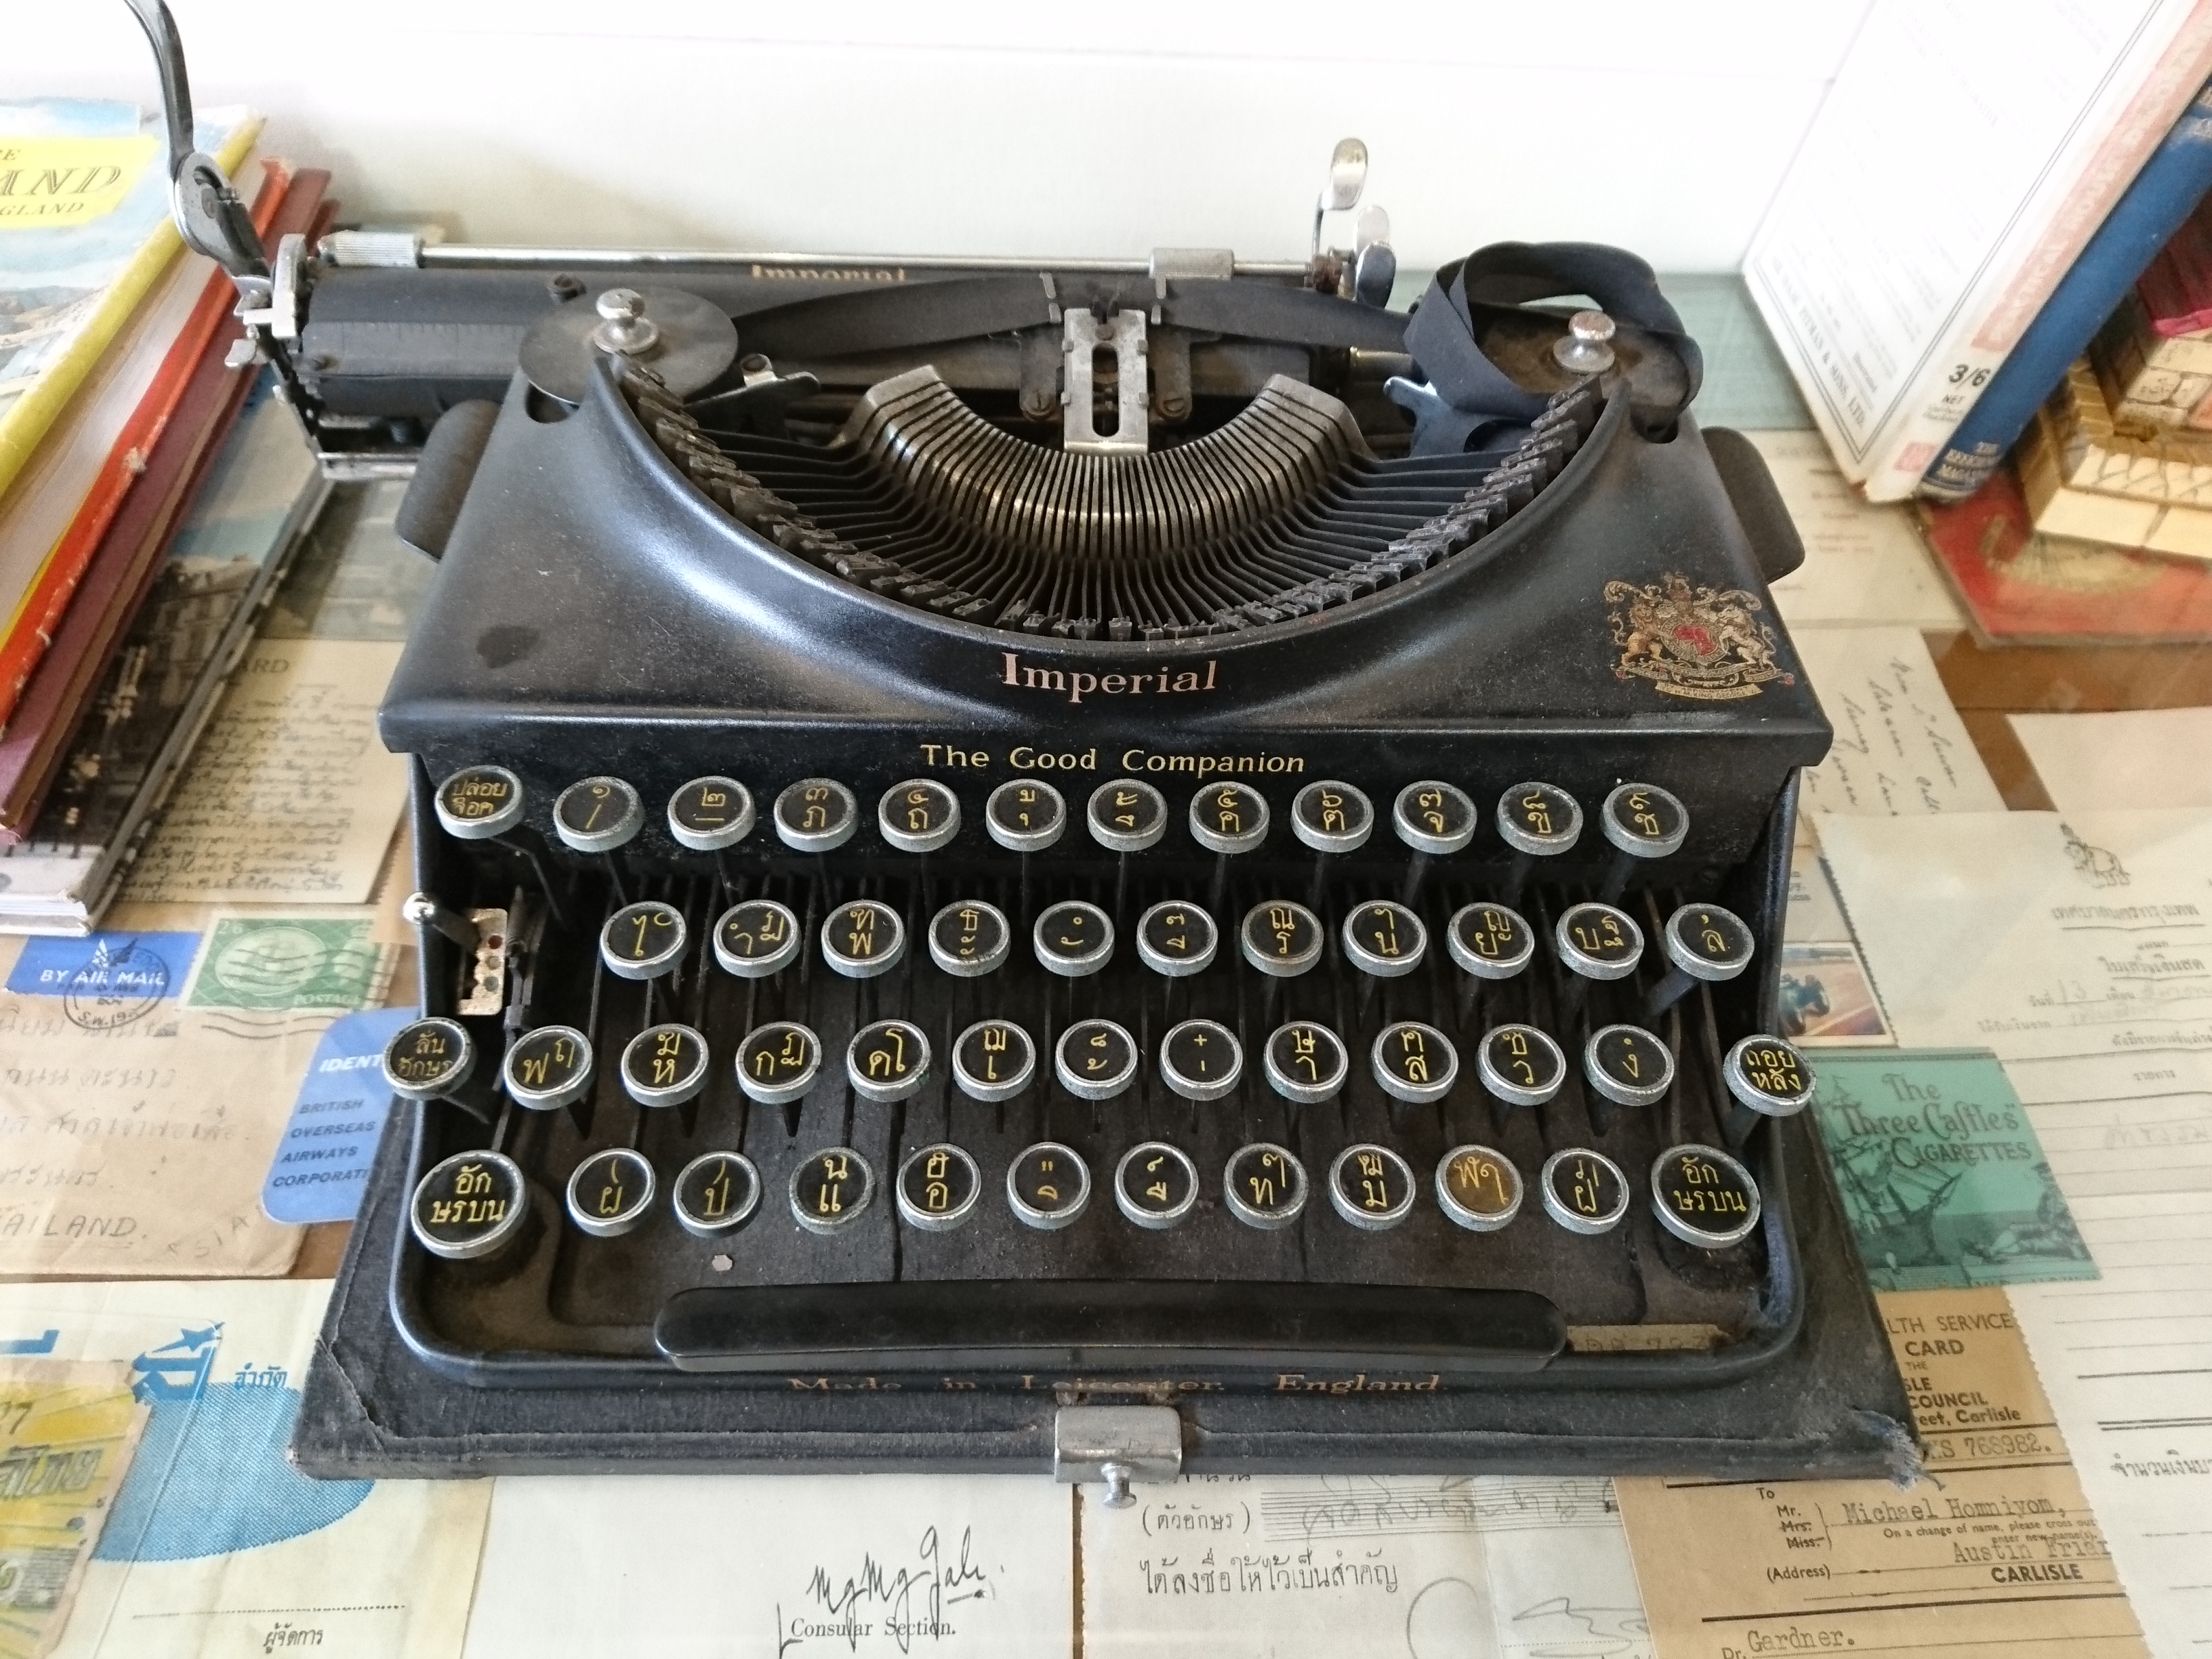 The Typewriter - Wikipedia